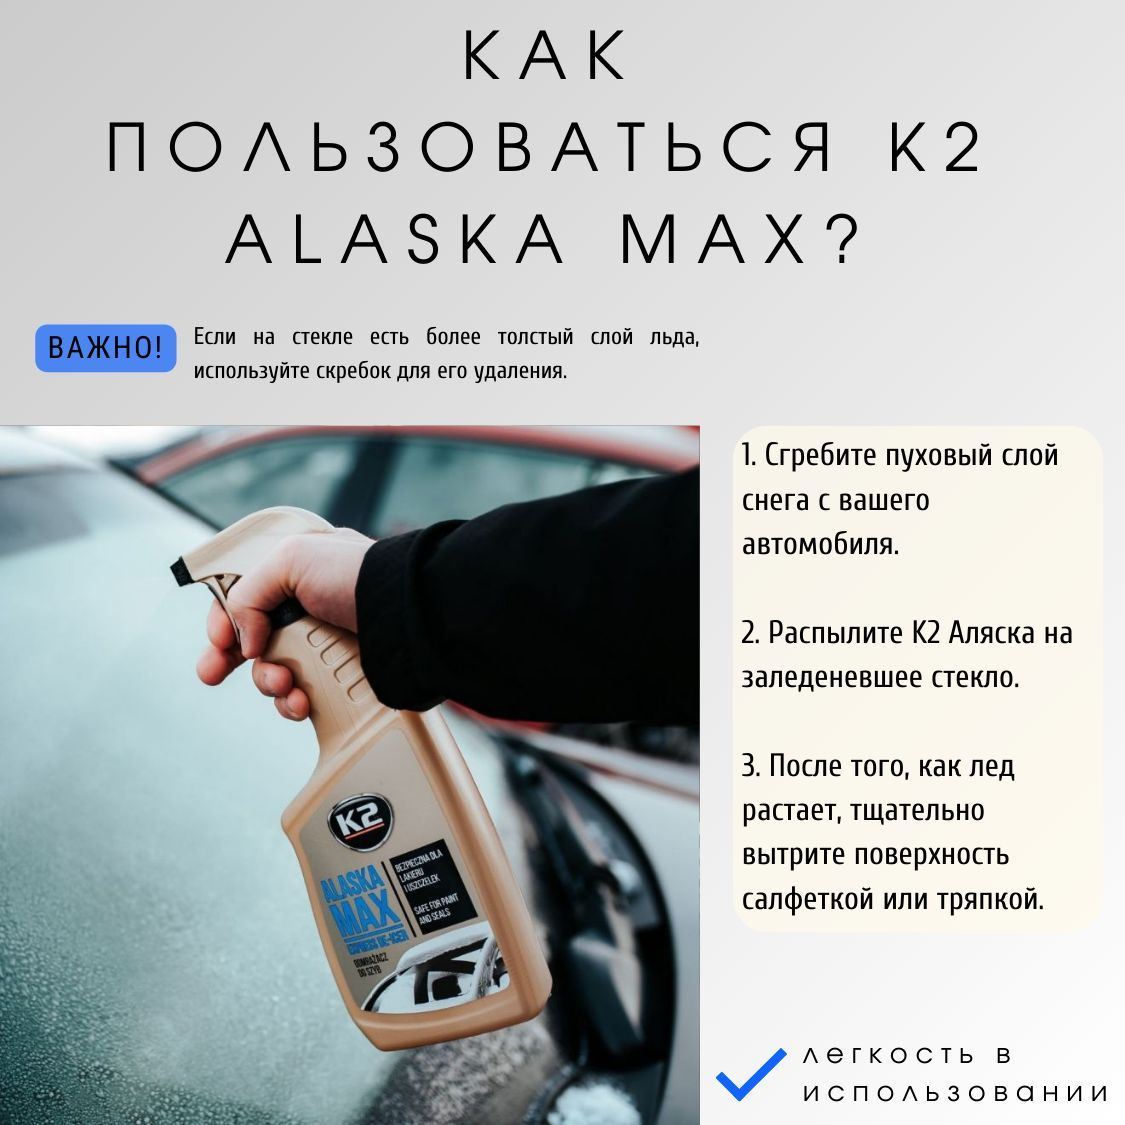 Применение размораживателя для стекол автомобиля K2 ALASKA MAX  очень простое:  1. Сгребите пуховый слой снега с вашего автомобиля.  2. Распылите антилед K2 Аляска на заледеневшее стекло, дверной замок или уплотнитель.  3. После того, как лед растает, тщательно вытрите поверхность салфеткой или тряпкой.Рекомендуем использовать K2 MOLI DRYING MICROFIBRE - полотенце из микрофибры. Важно! Если на стекле есть более толстый слой льда, используйте скребок для его удаления.